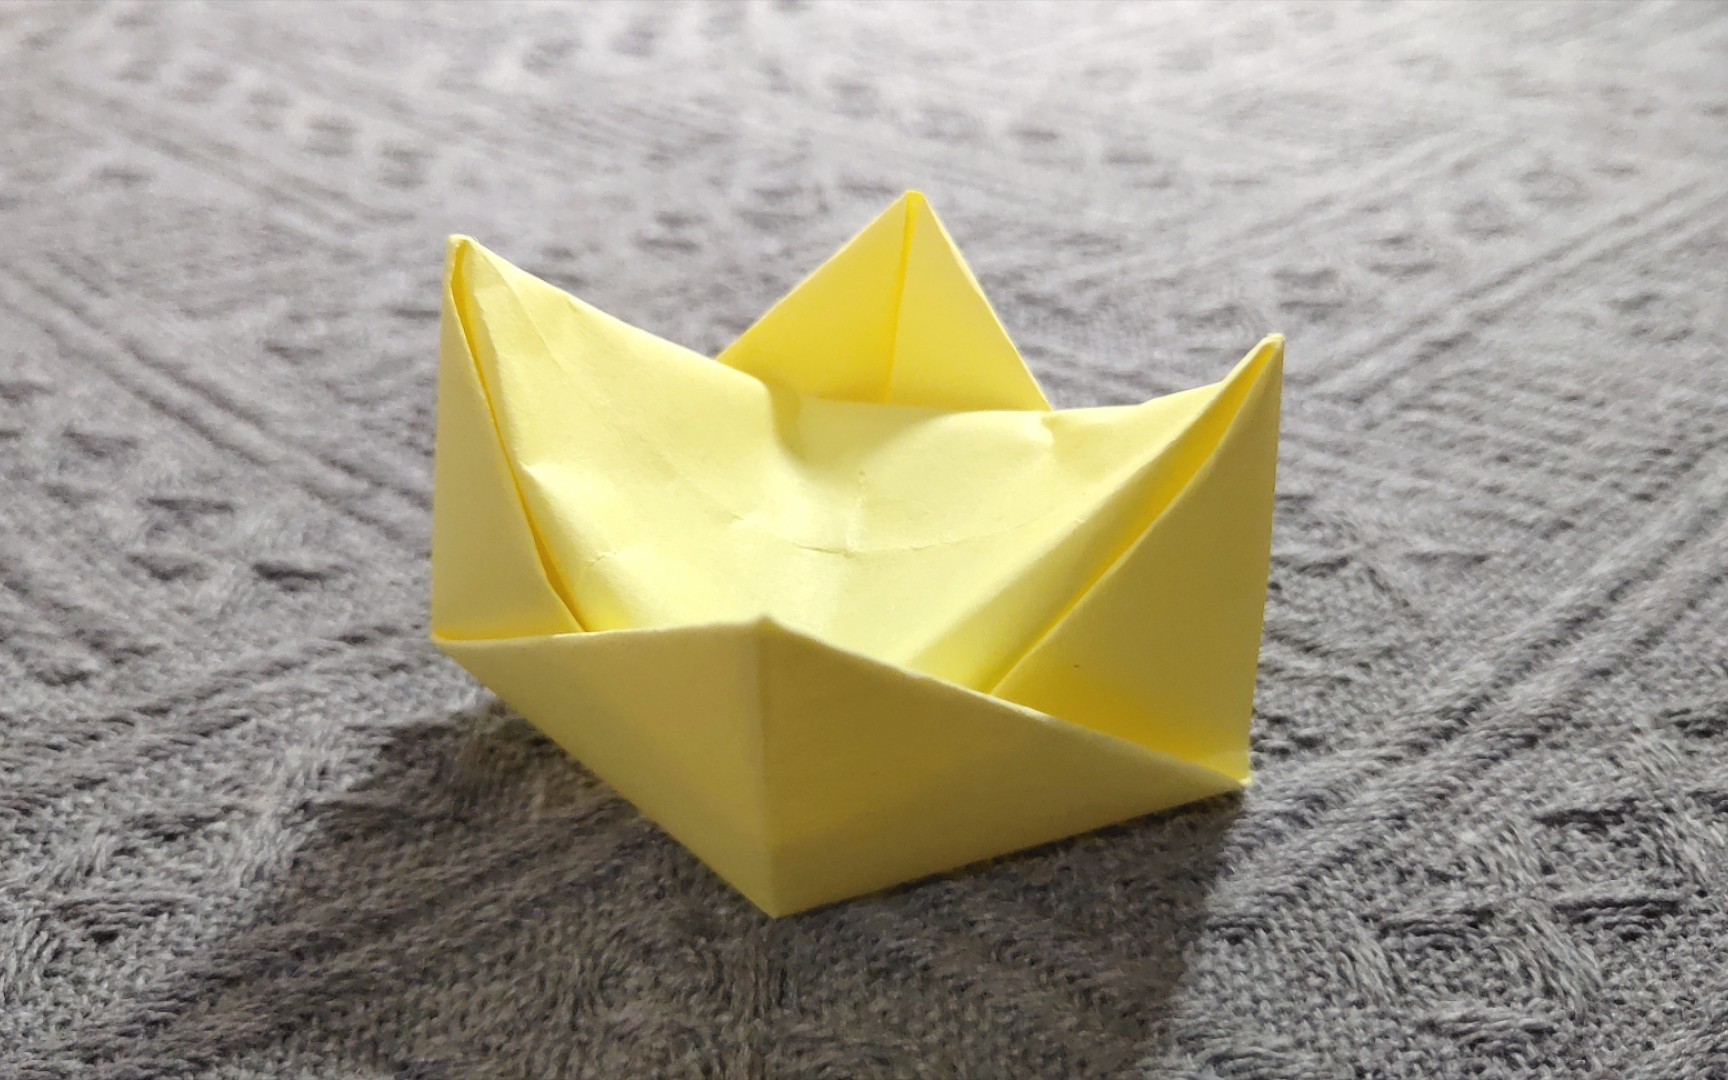 【折纸】波吉王冠折纸教程,小朋友最爱,快来试试